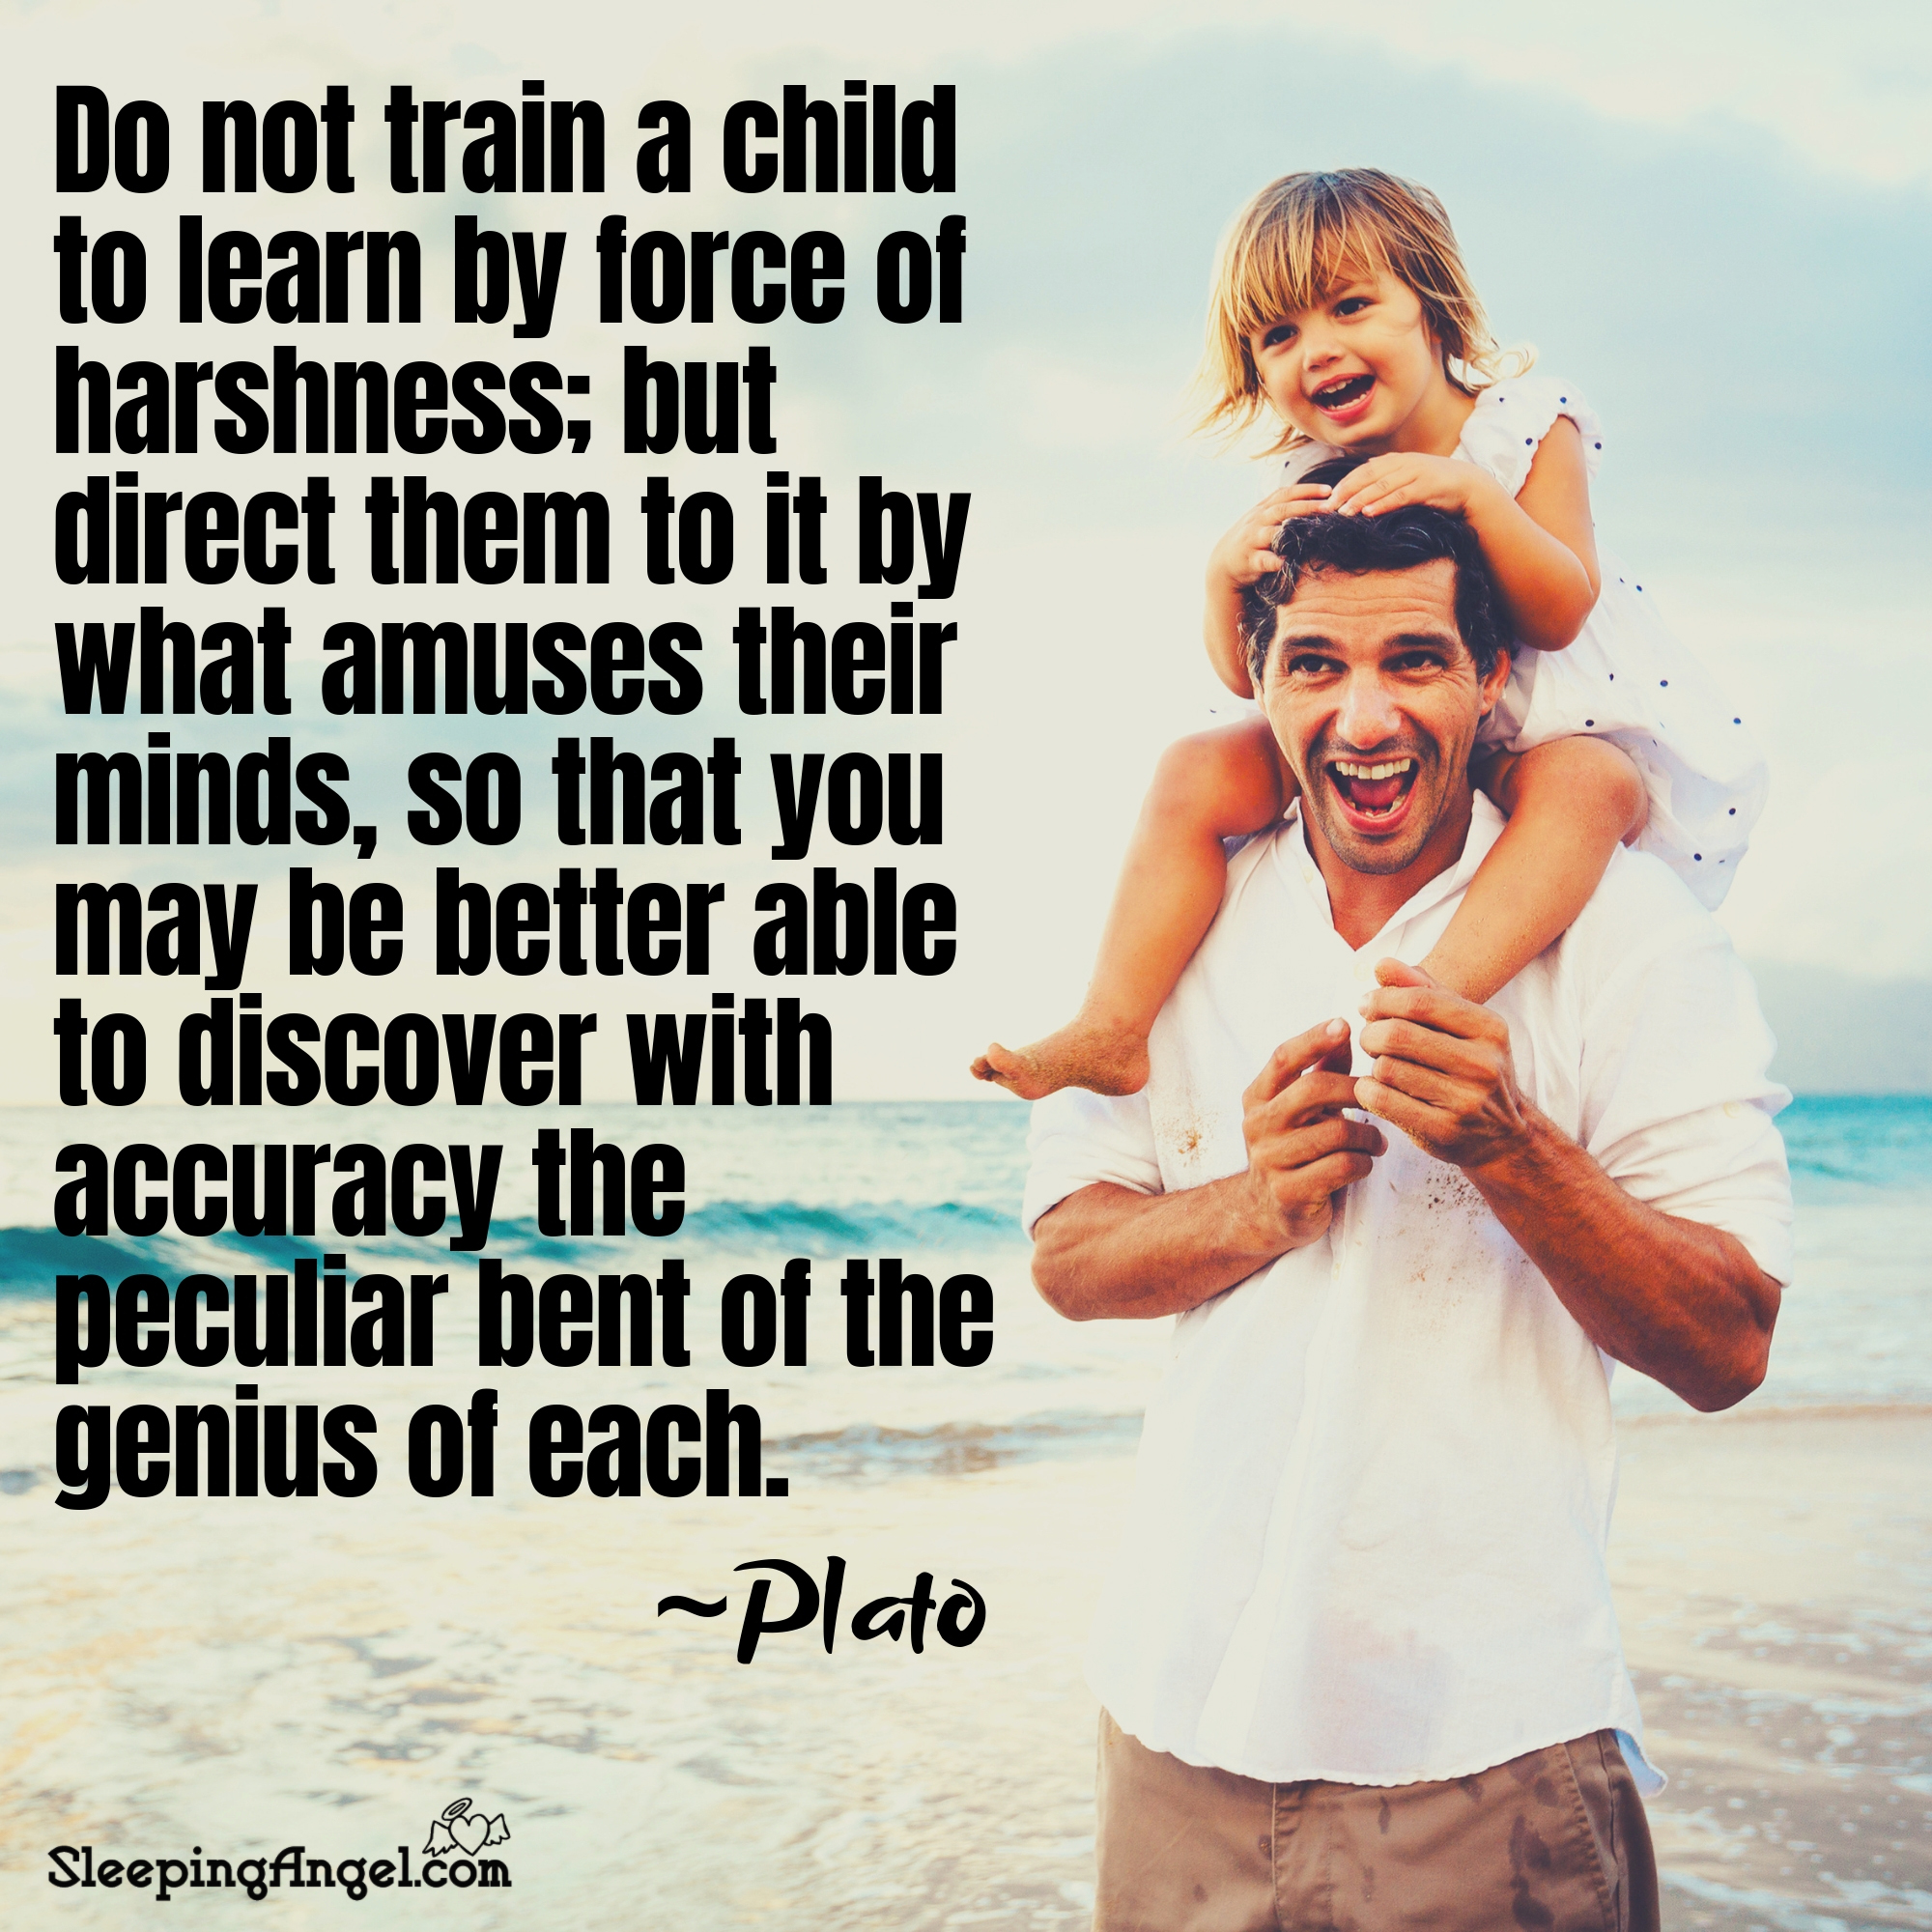 Train a Child Quote